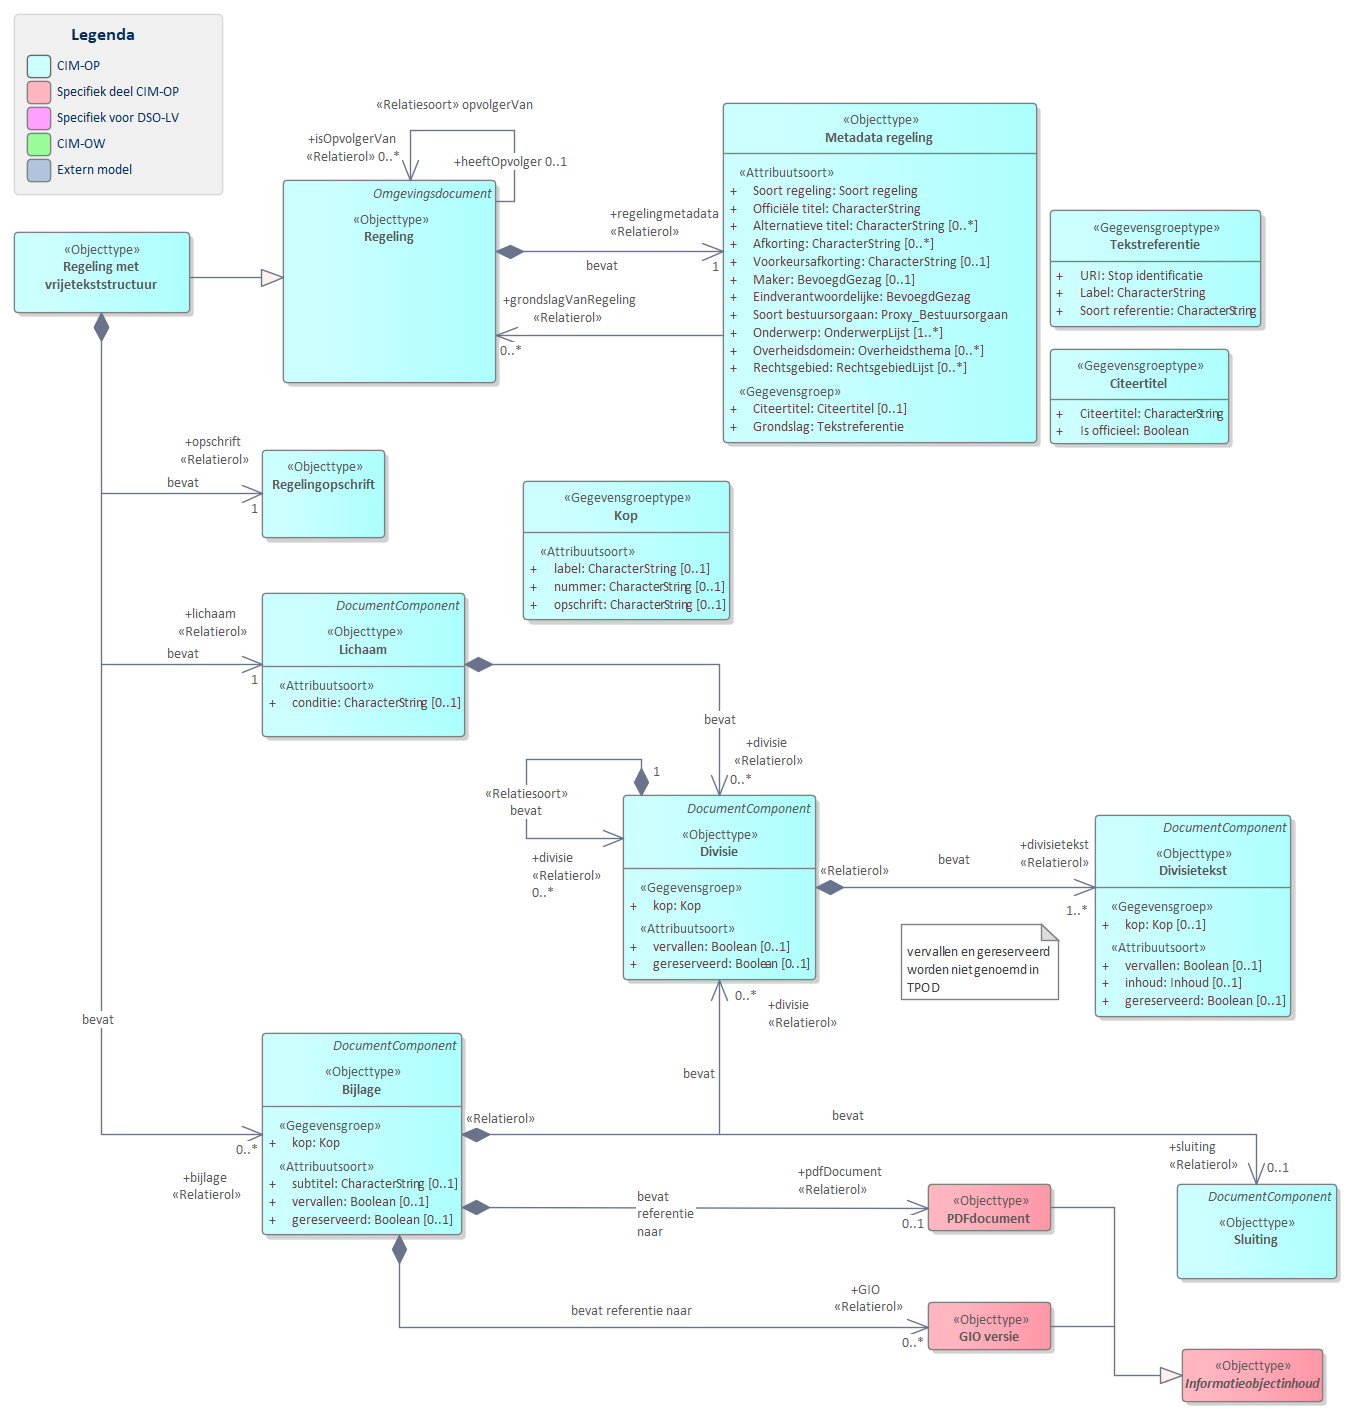 Diagram 
                        UML diagram voor RegelingVrijetekst.
                        Model voor regelingen met een vrije tekst structuur.
                        
                        Een RegelingVrijetekst bevat de volgende basisonderdelen:
                        
                        
                           Regelingmetadata bevat de gegevens over een regeling zoals titel en maker.
                           Opschrift
                           Lichaam
                           Divisie
                           DivisieTekst
                           Bijlage
                        
                        
                        
                        De meeste van delen van de basisonderdelen zijn weer verder opgedeeld in onderdelen.
                        
                        
                           
                              
                                 Referentie naar STOP
                              
                           
                        
                     